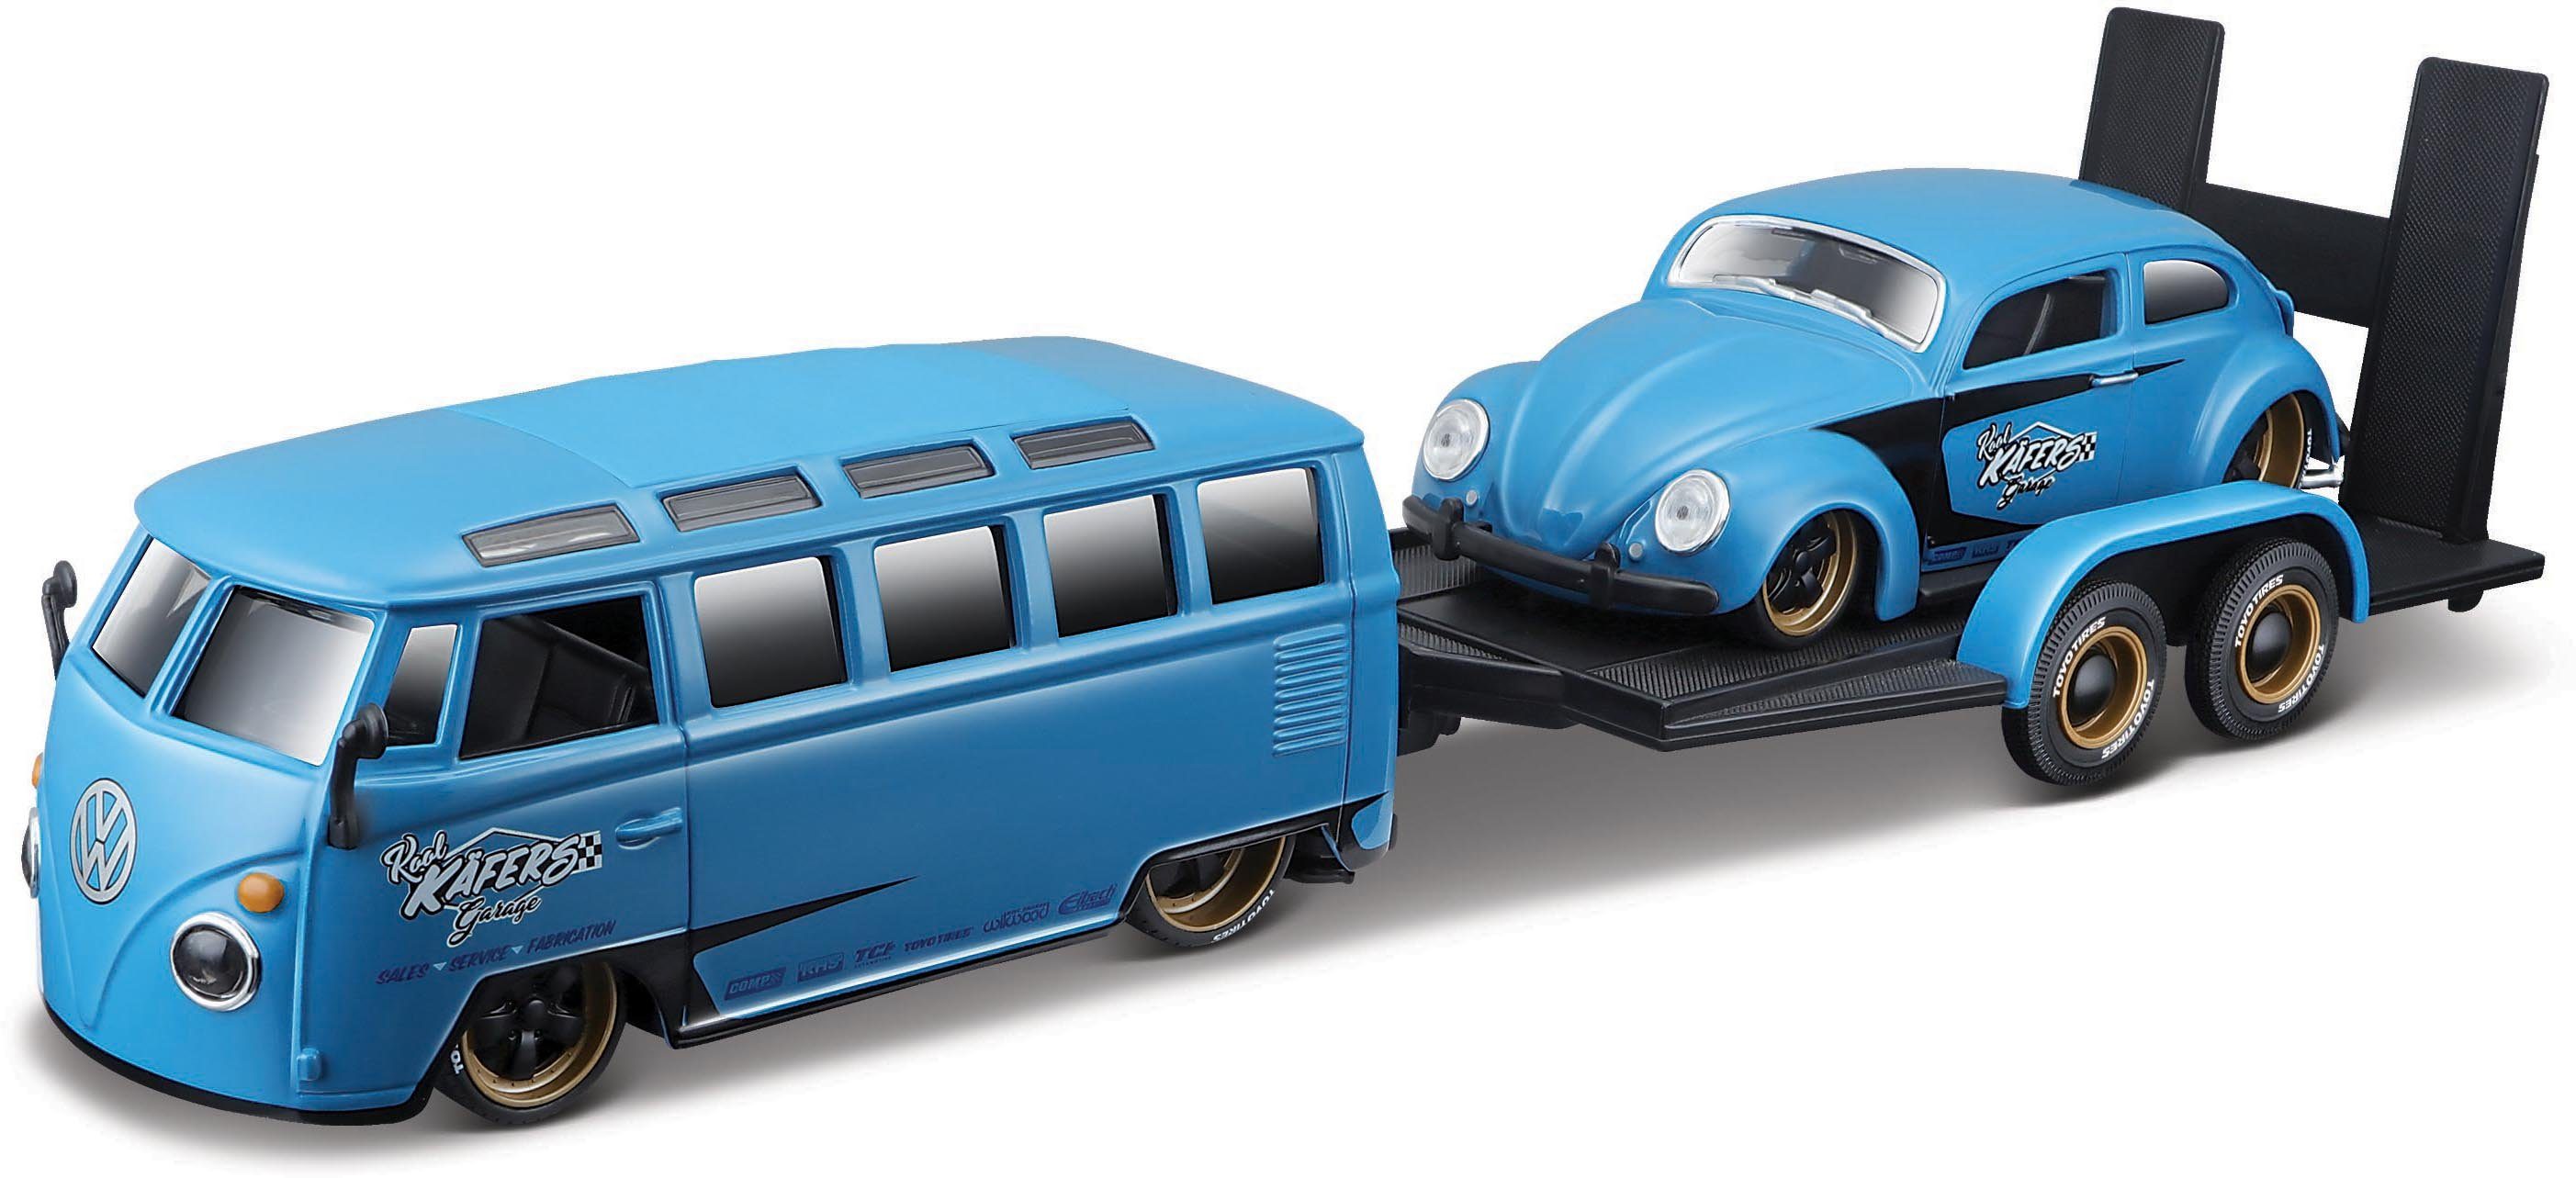 Image of Maisto® Sammlerauto »Elite Transporter VW Van Samba«, Maßstab 1:24, inklusive Anhänger mit Beetle